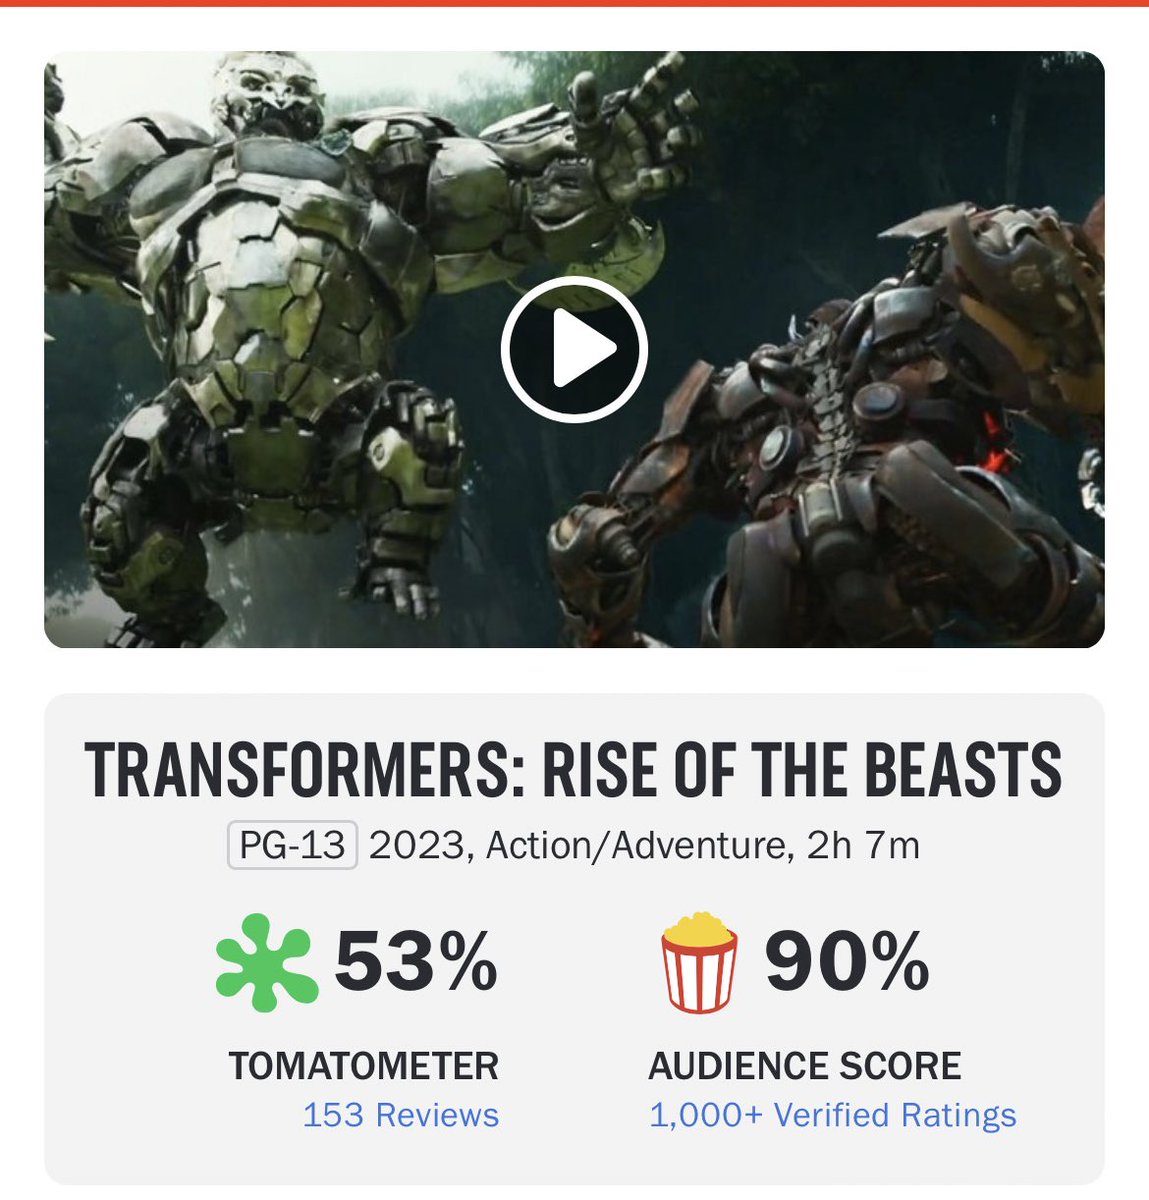 Transformers: Rise of the Beasts filmi eleştirmenler tarafından beğenilmezken; seyirciler tarafından beğenilmiş gibi gözüküyor.

Eleştirmen skoru %53
Seyirci skoru %90